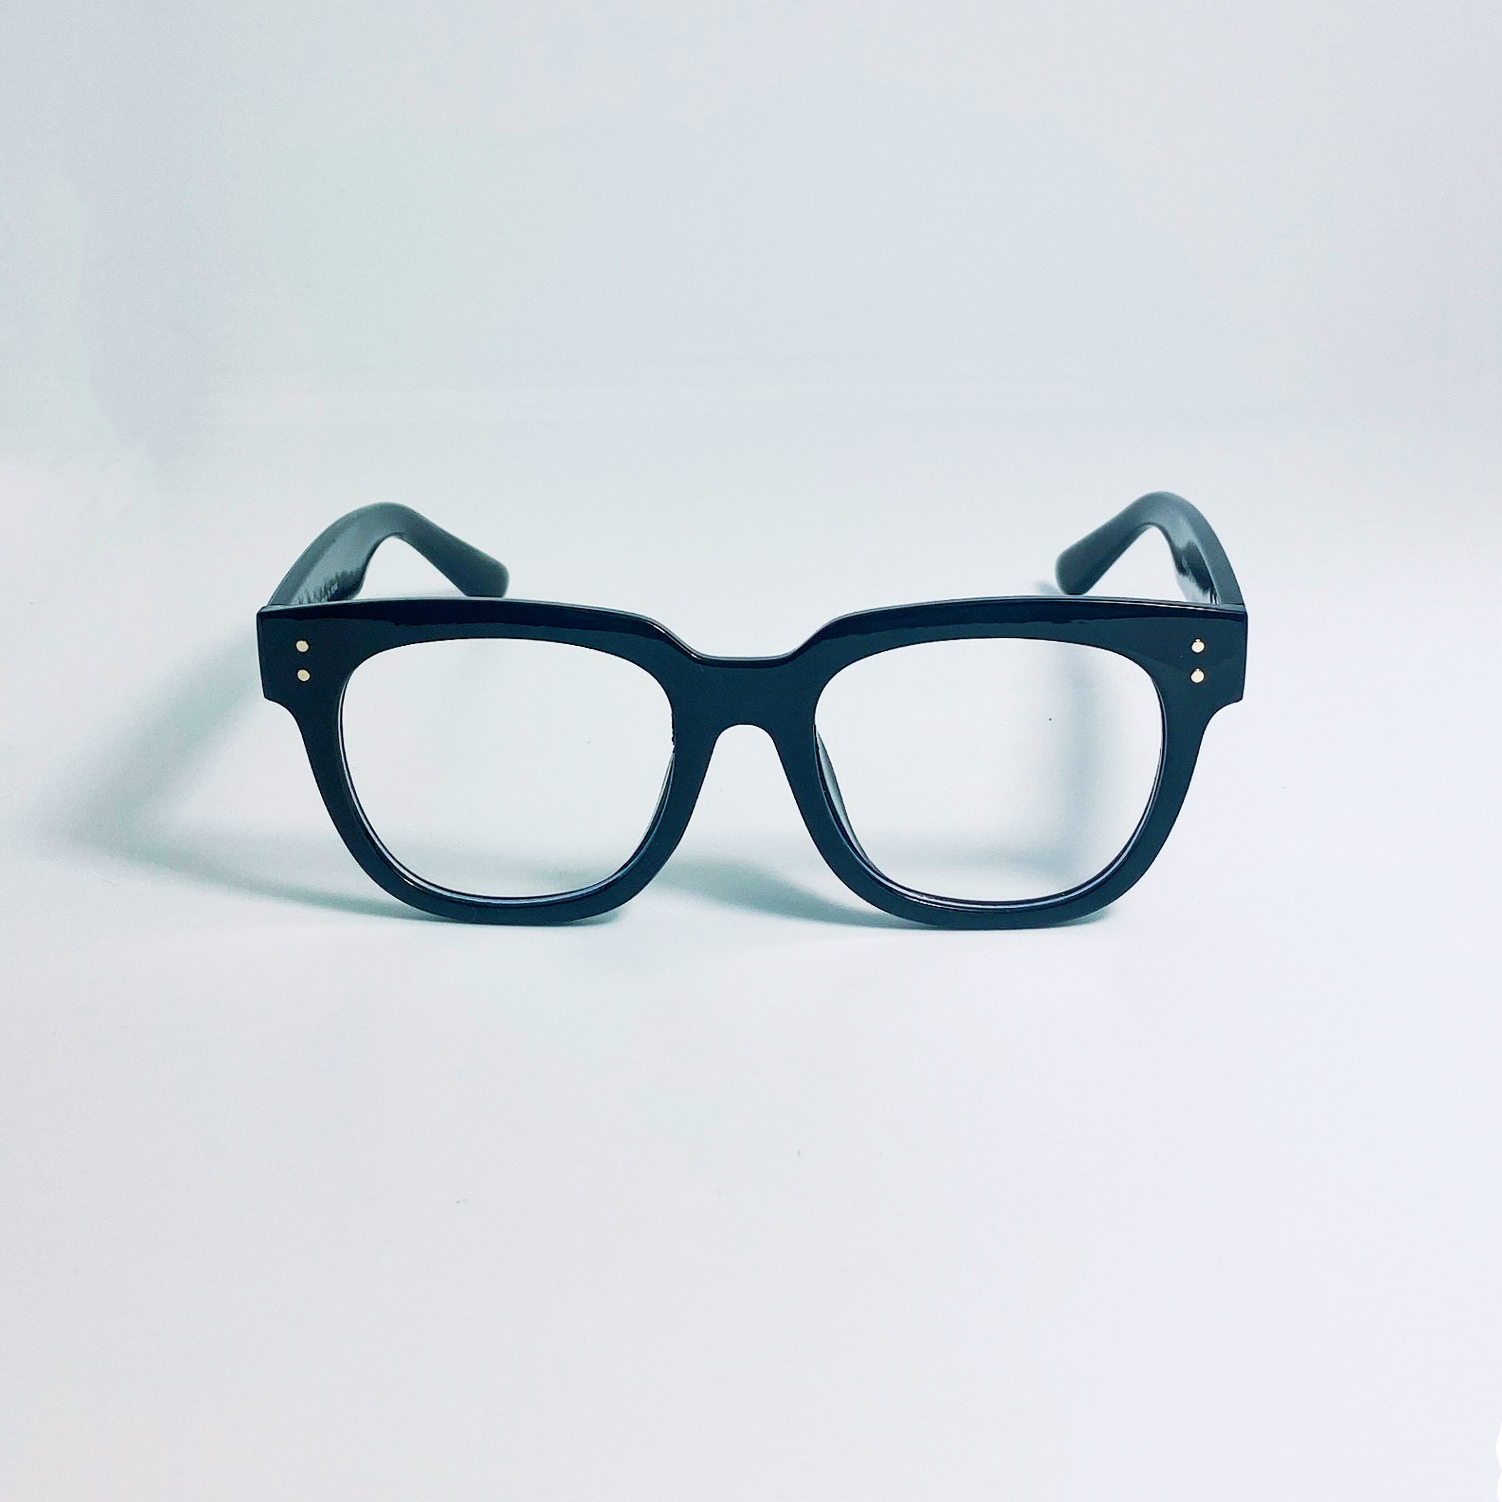 Mắt kính giả cận cao cấp Jun Secret gọng nhựa bảng to, tròng kính 0 độ chống tia UV dành cho cả nam và nữ JSVGENTLETO